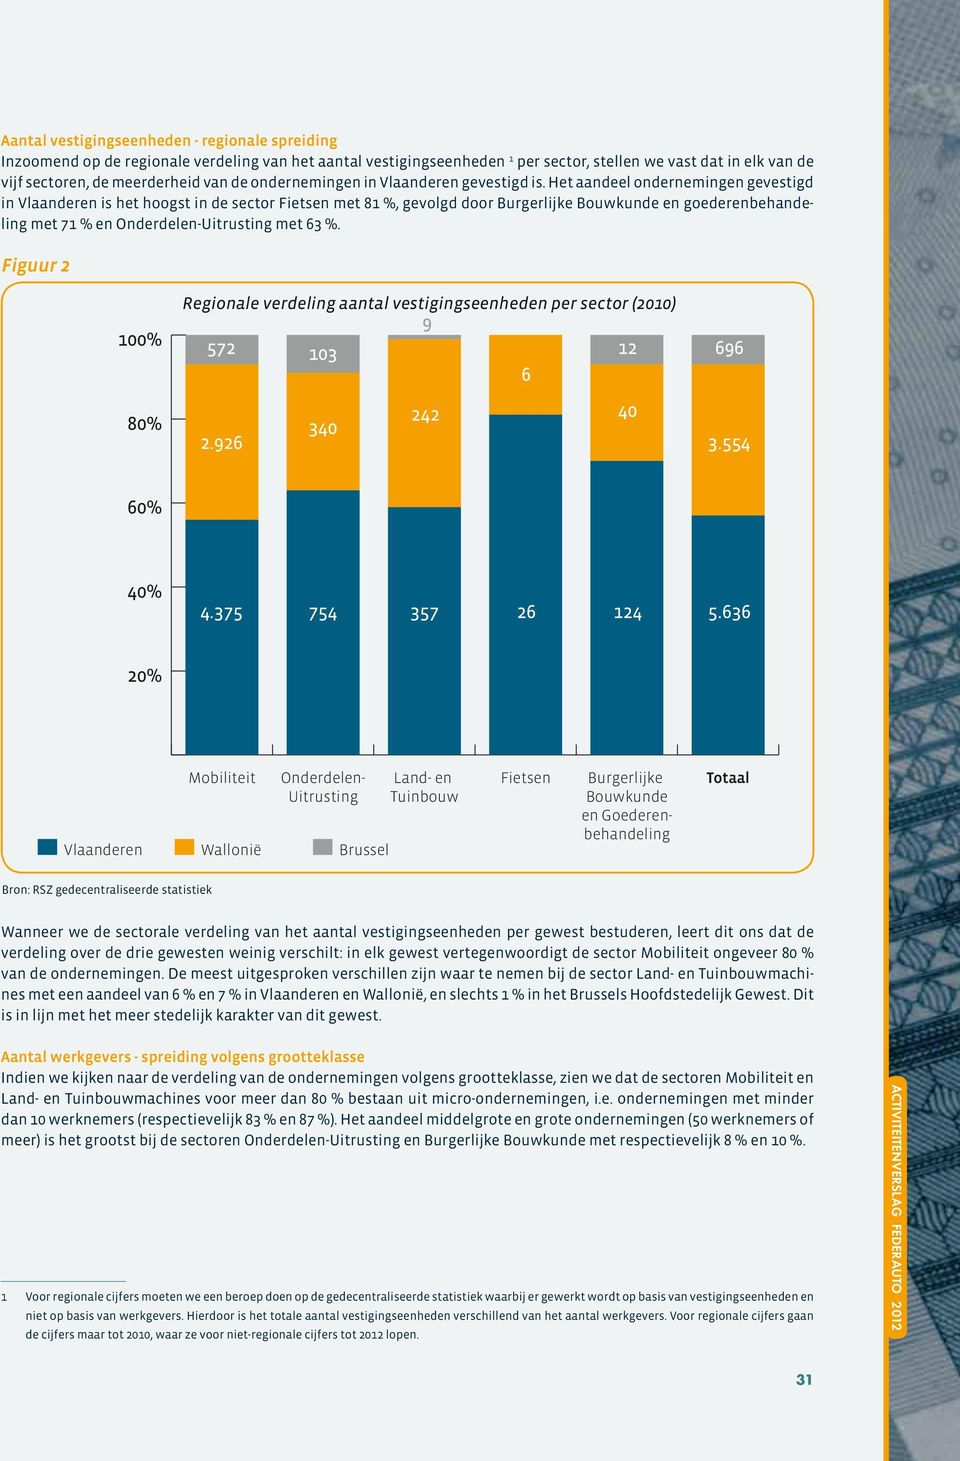 Het aandeel ondernemingen gevestigd in Vlaanderen is het hoogst in de sector Fietsen met 81 %, gevolgd door Burgerlijke Bouwkunde en goederenbehandeling met 71 % en Onderdelen-Uitrusting met 63 %.